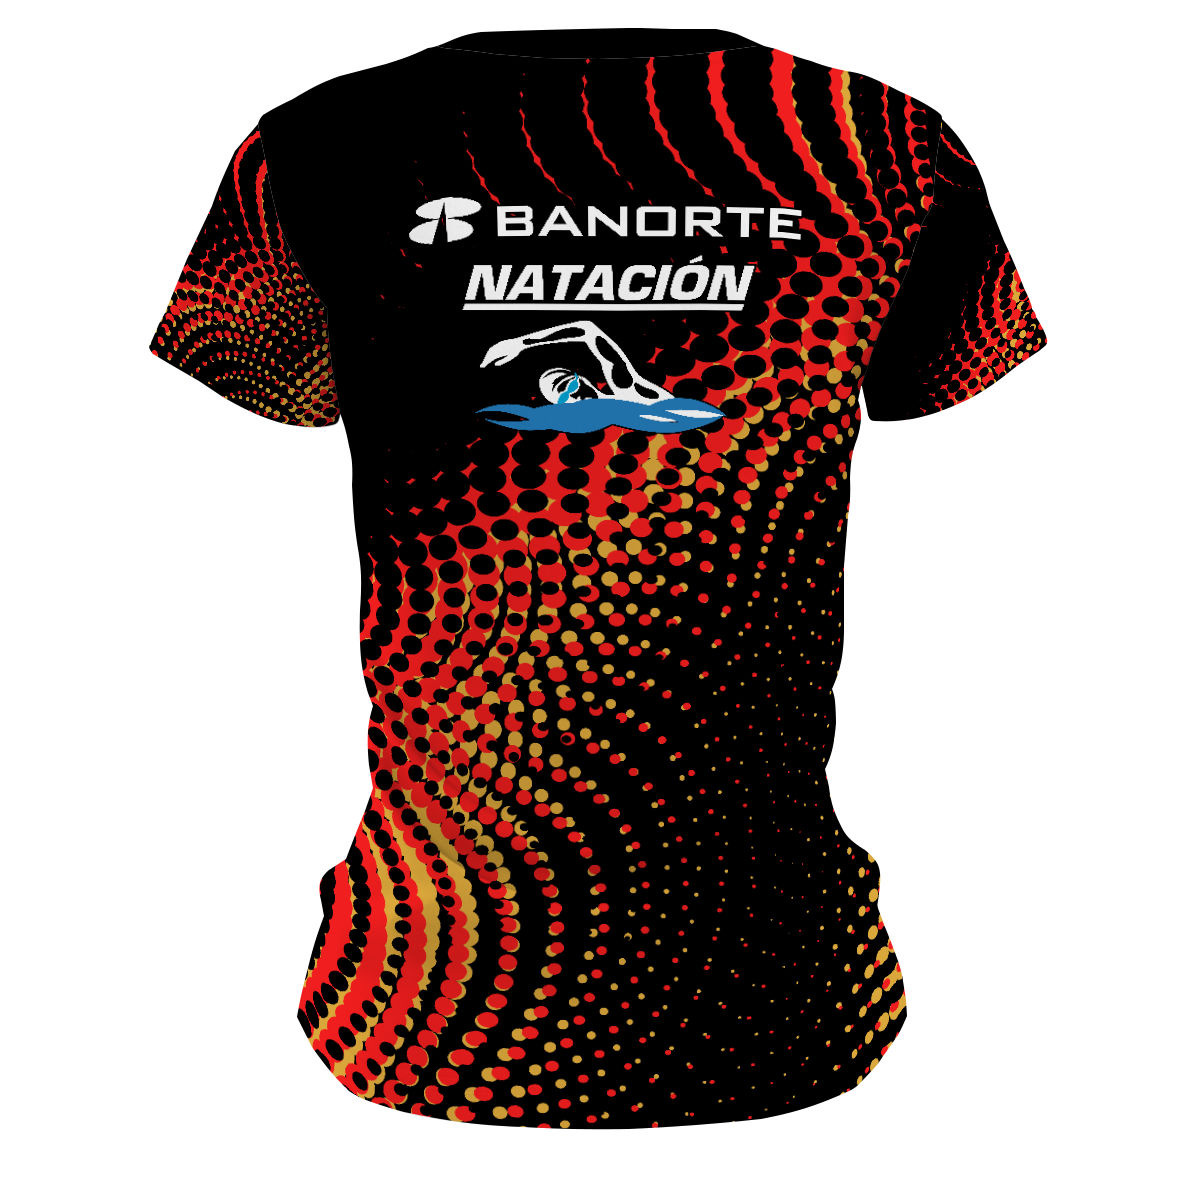 Banorte - Women's Performance Shirt